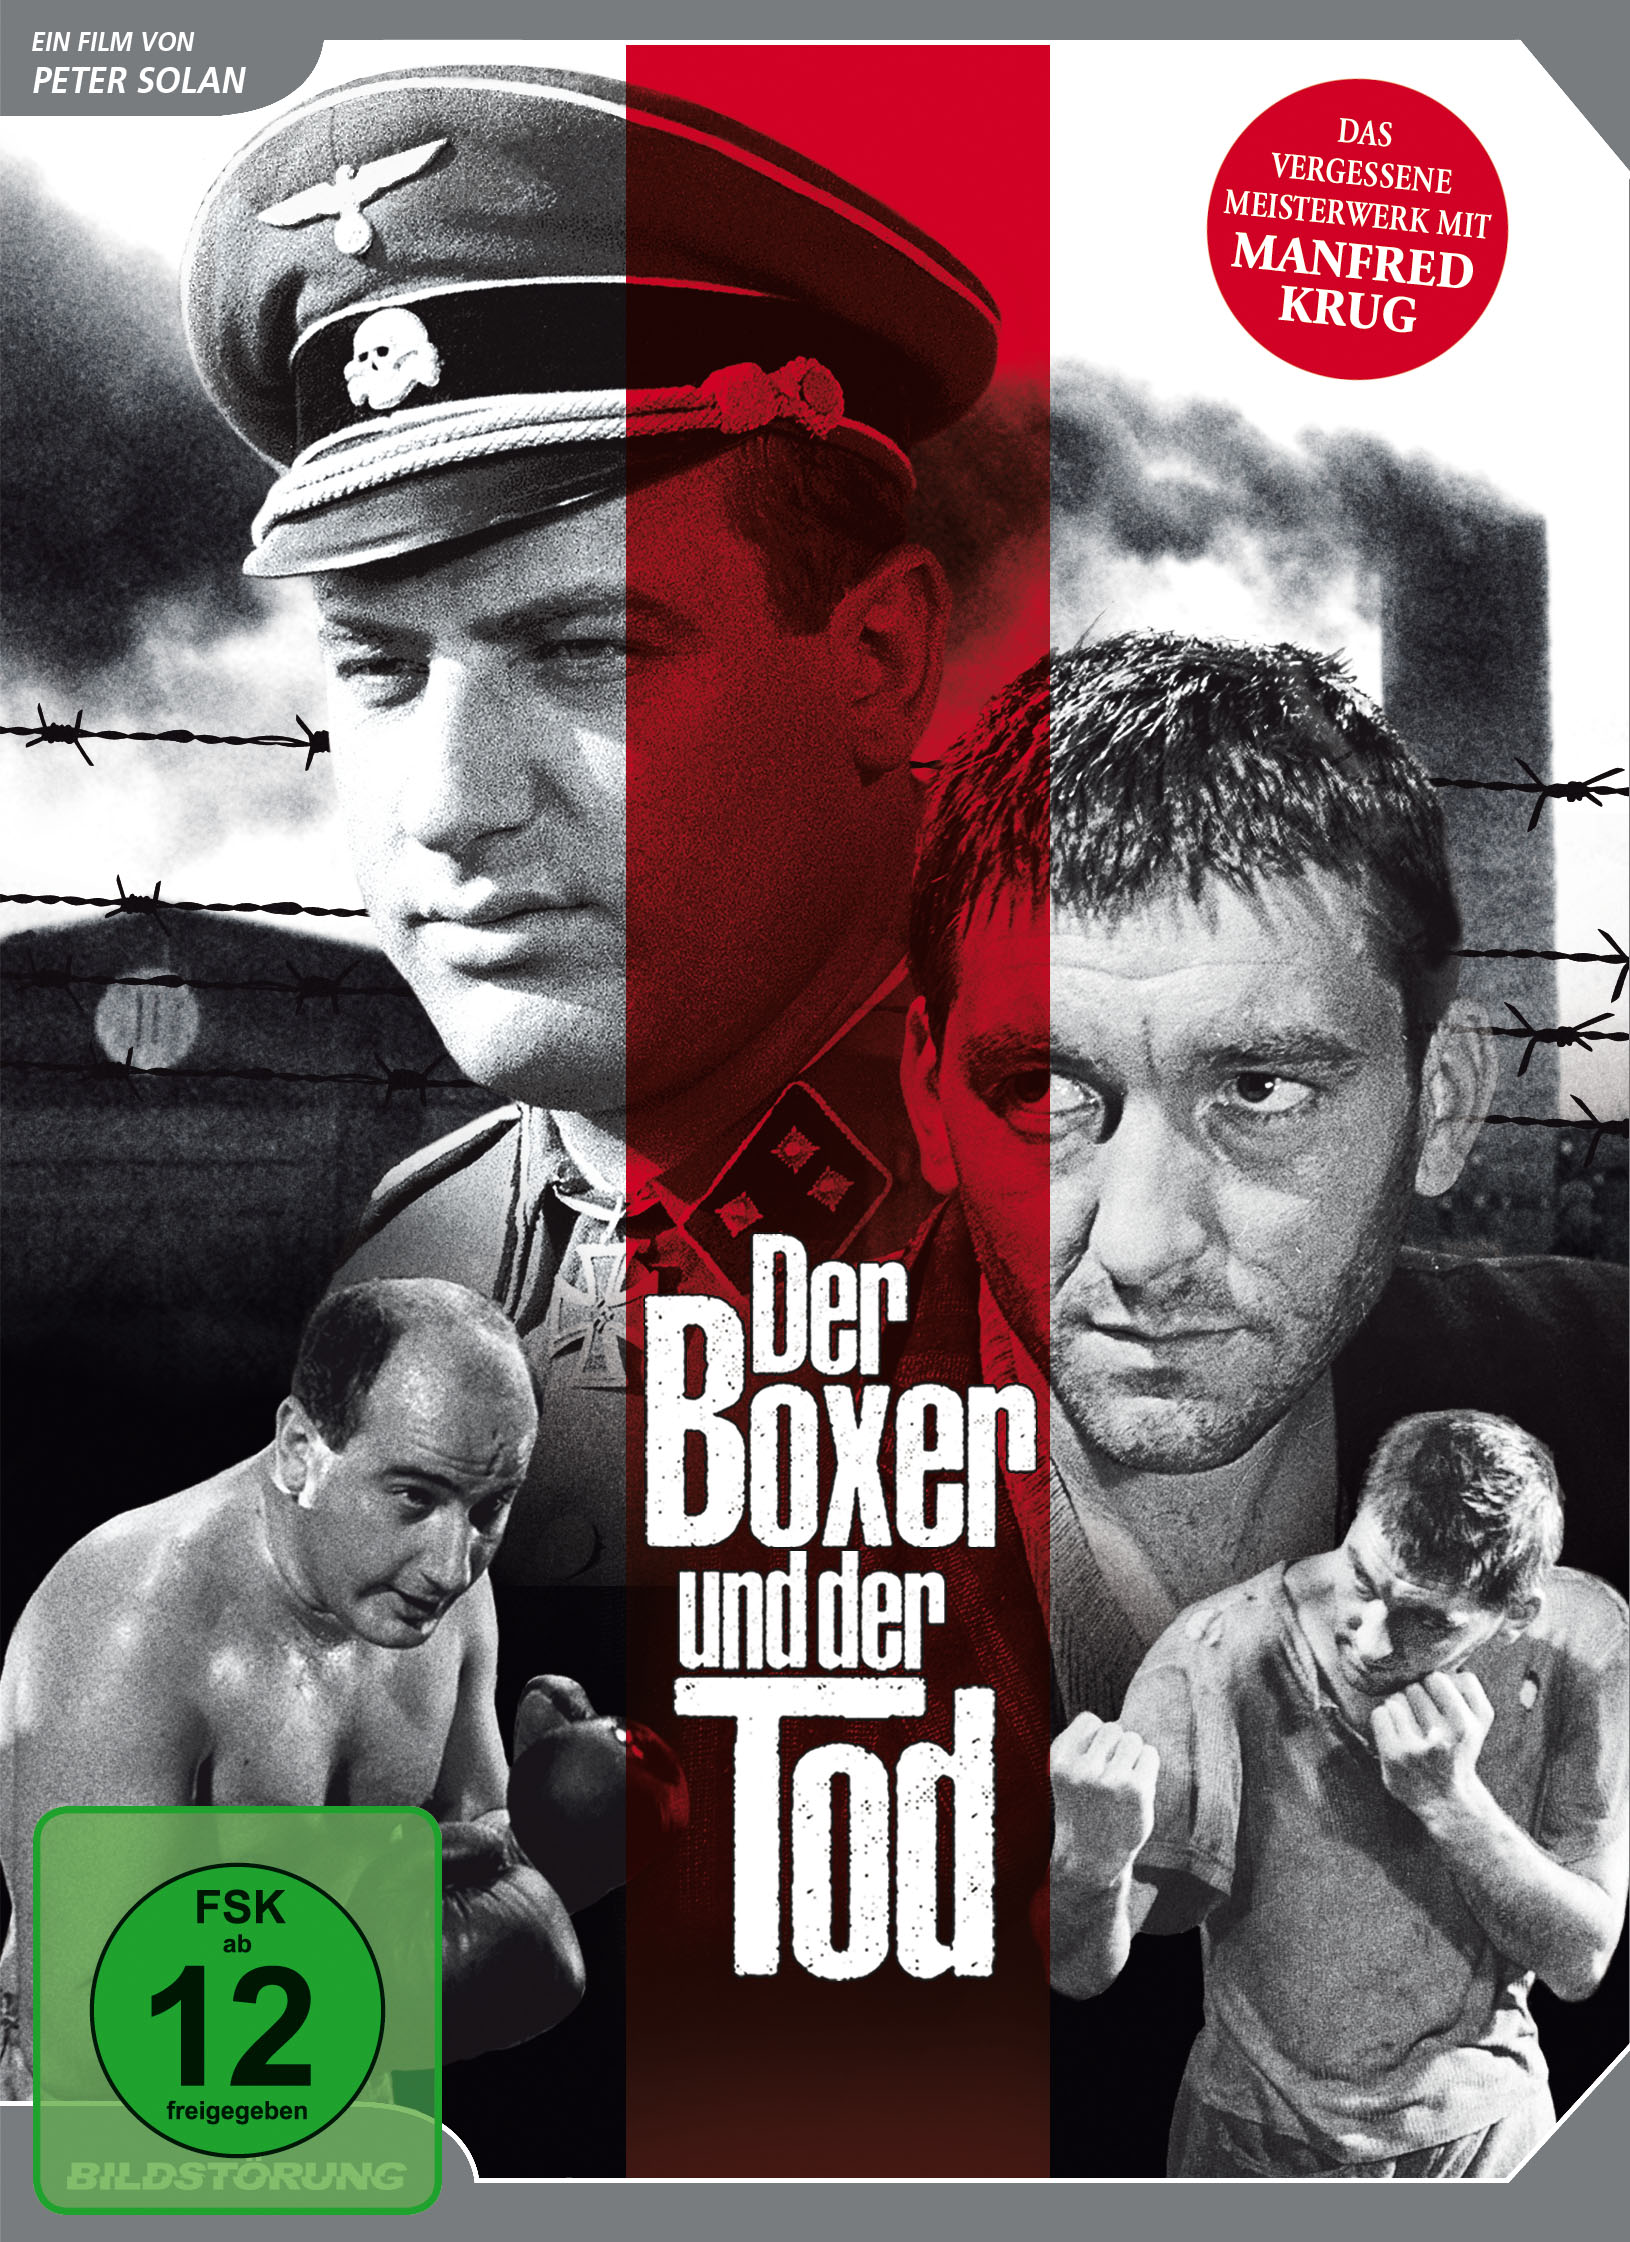 Boxer_cover_dvd.jpg